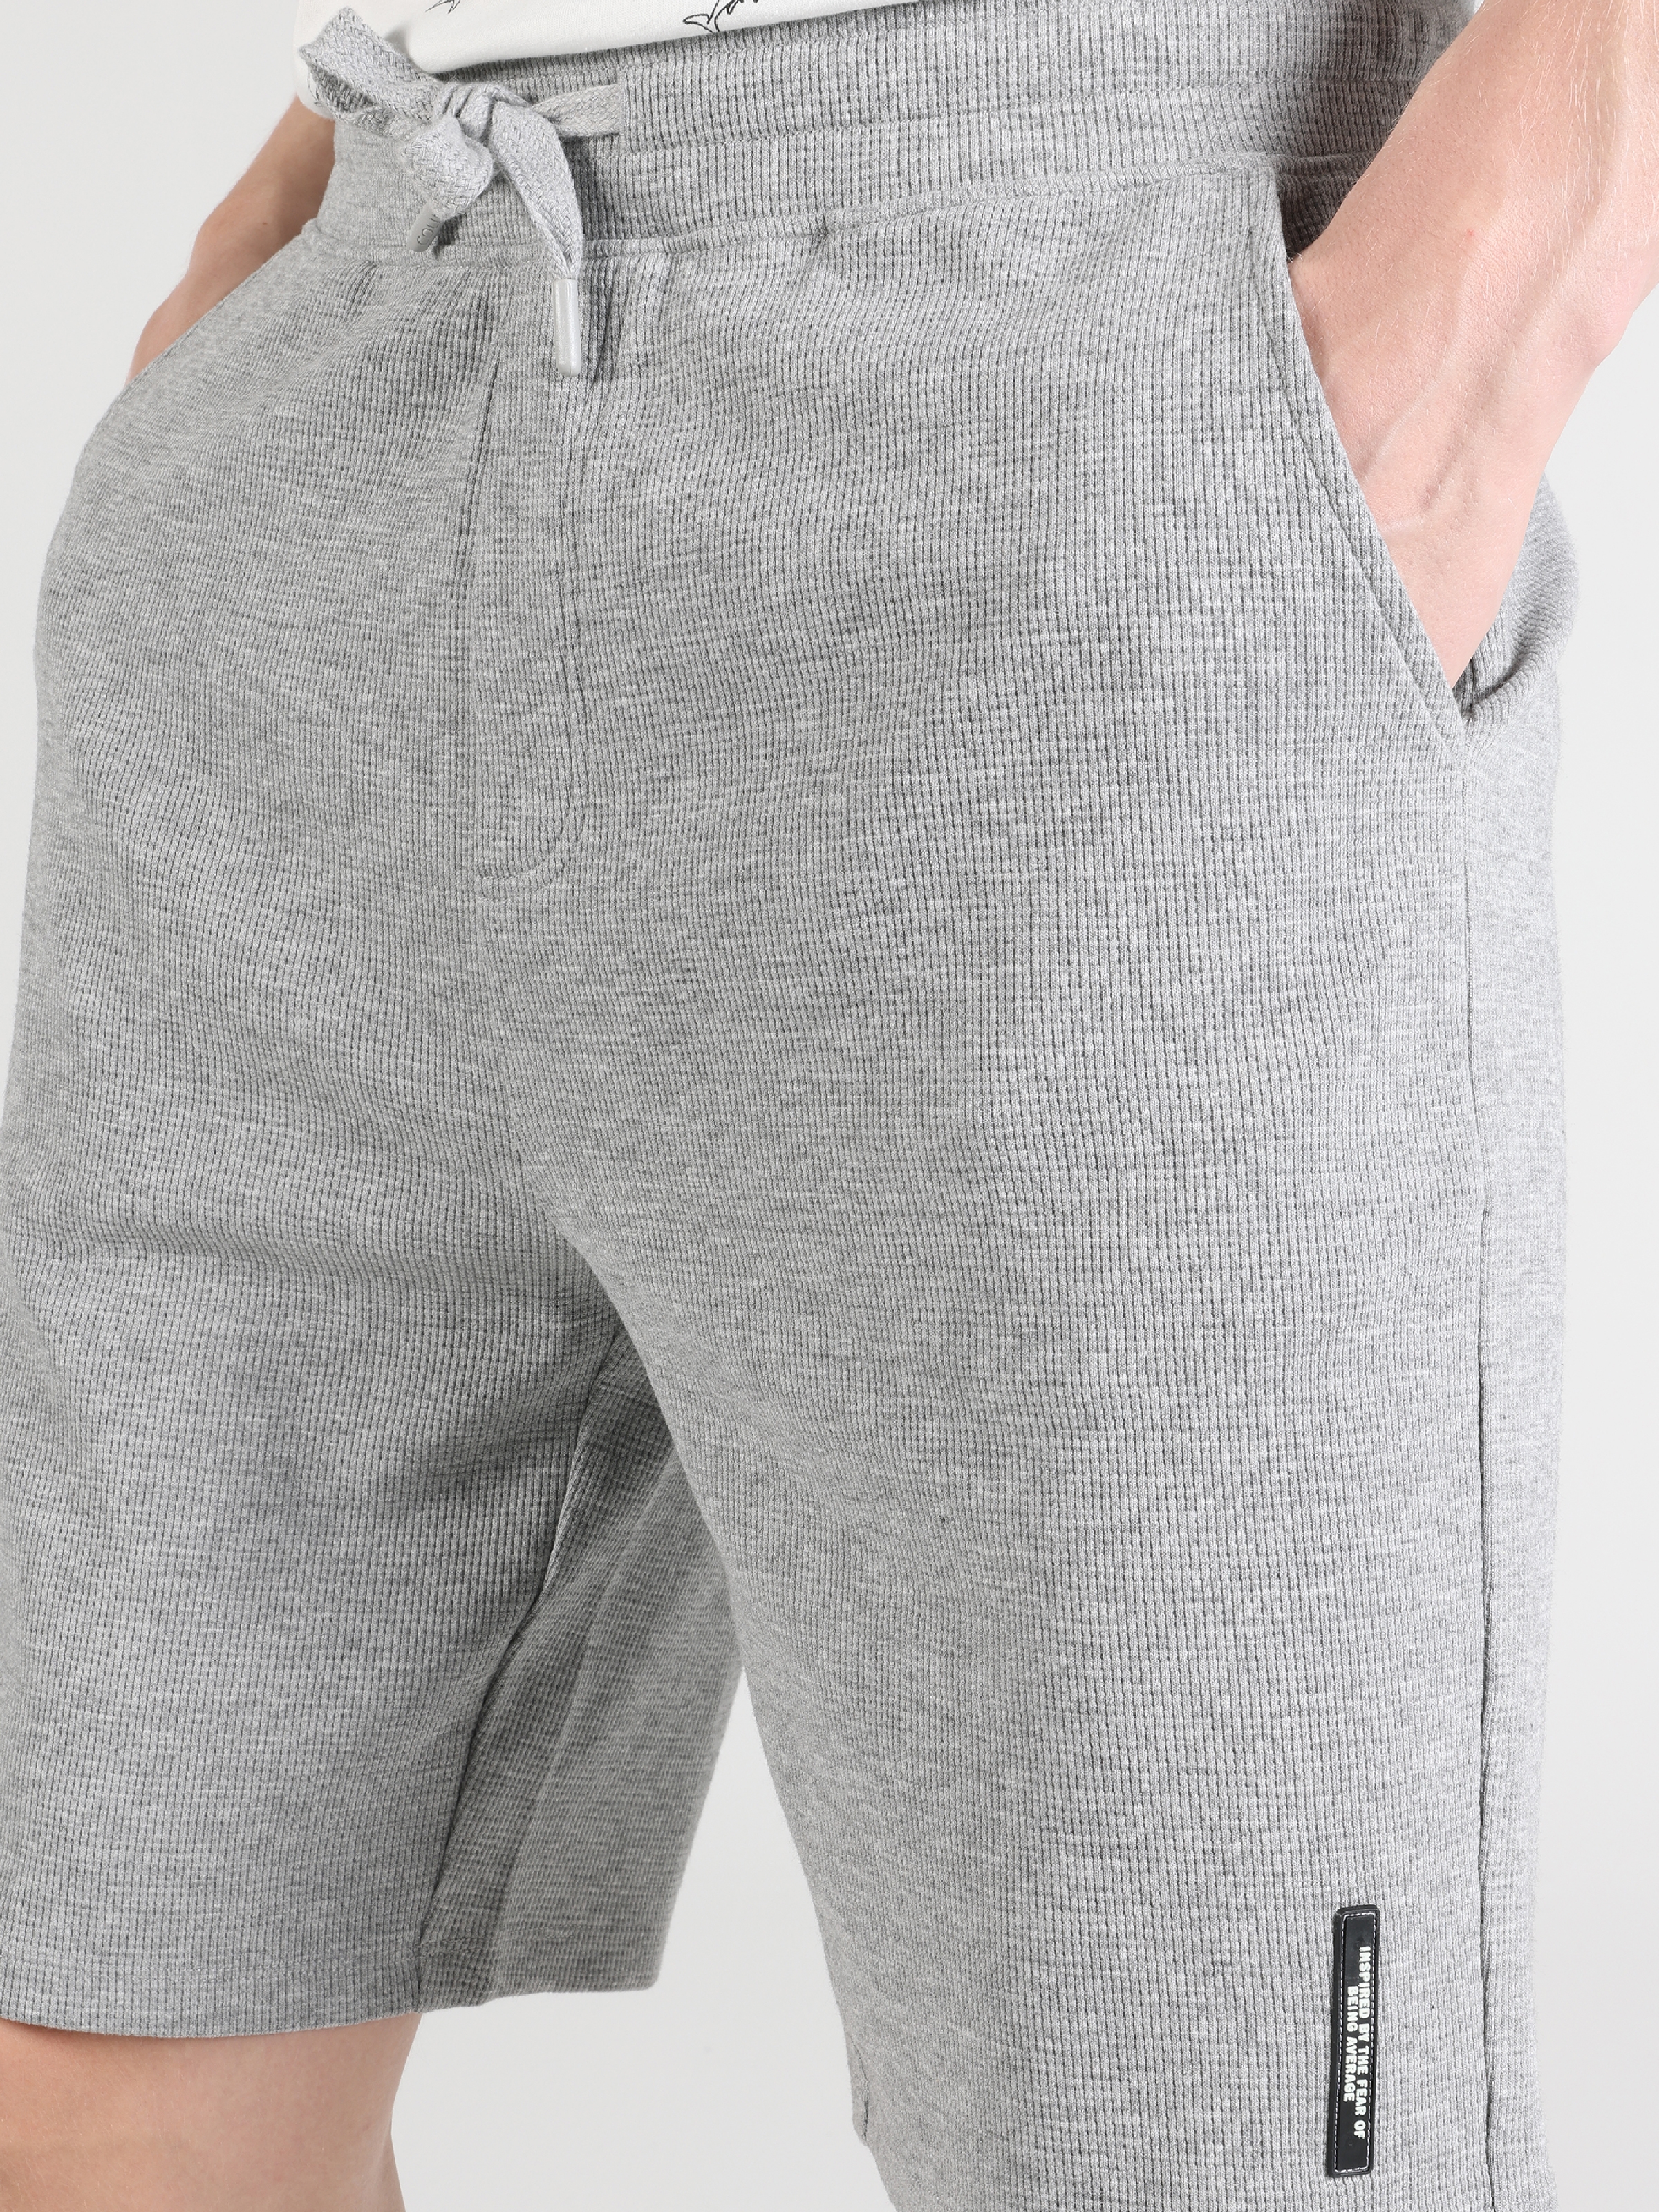 Afișați detalii pentru Short / Pantaloni Scurti De Barbati Gri Regular Fit  